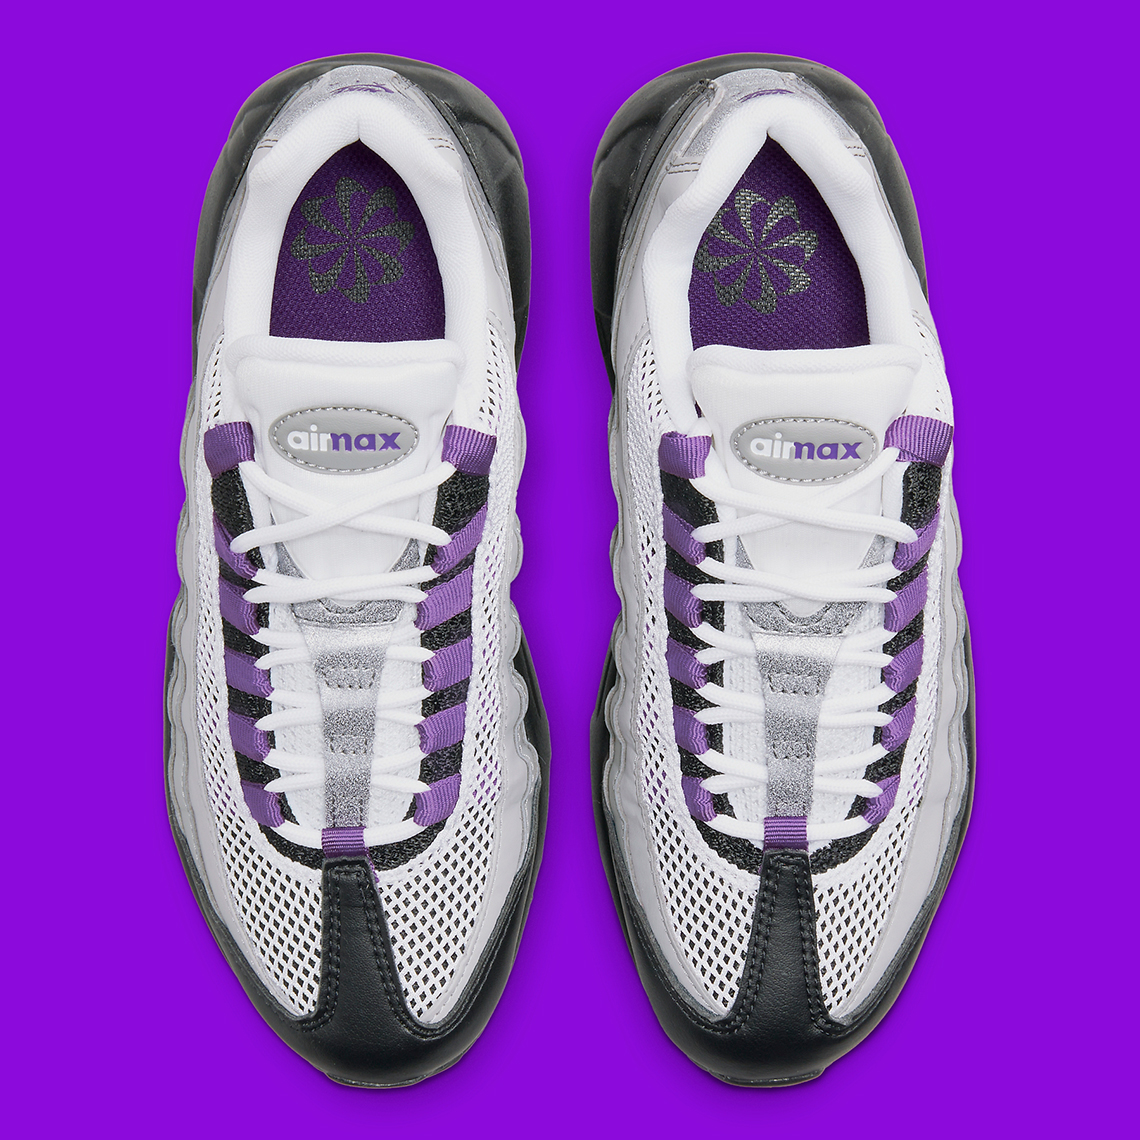 nike-air-max-95-womens-black-purple-dh8015-003-2.jpg